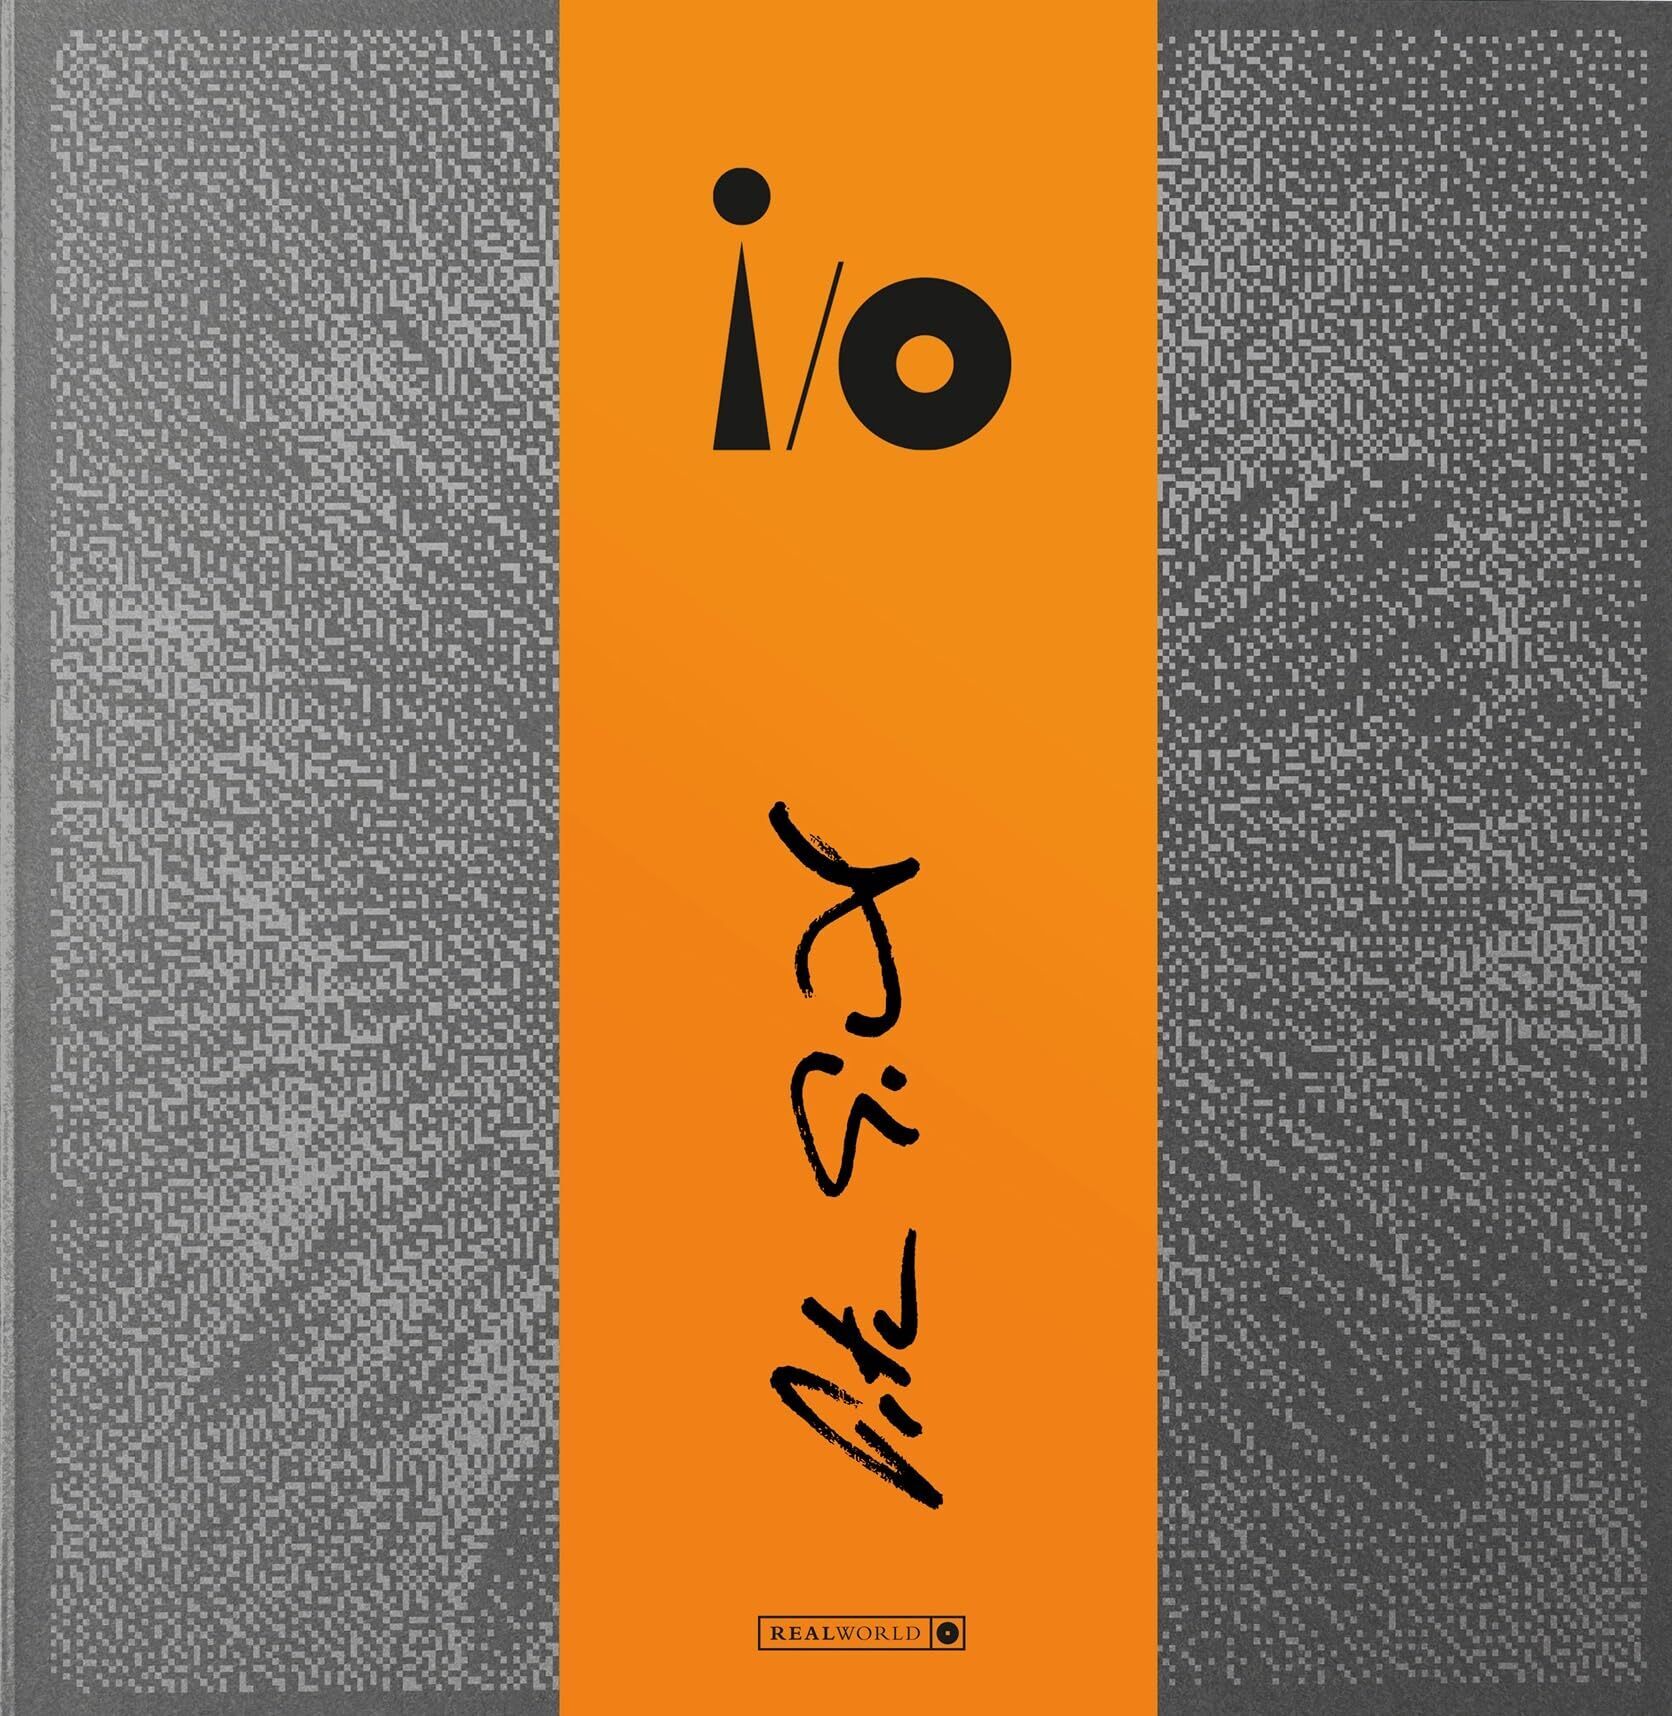 Peter Gabriel – I/O 3 Disc Edition Review